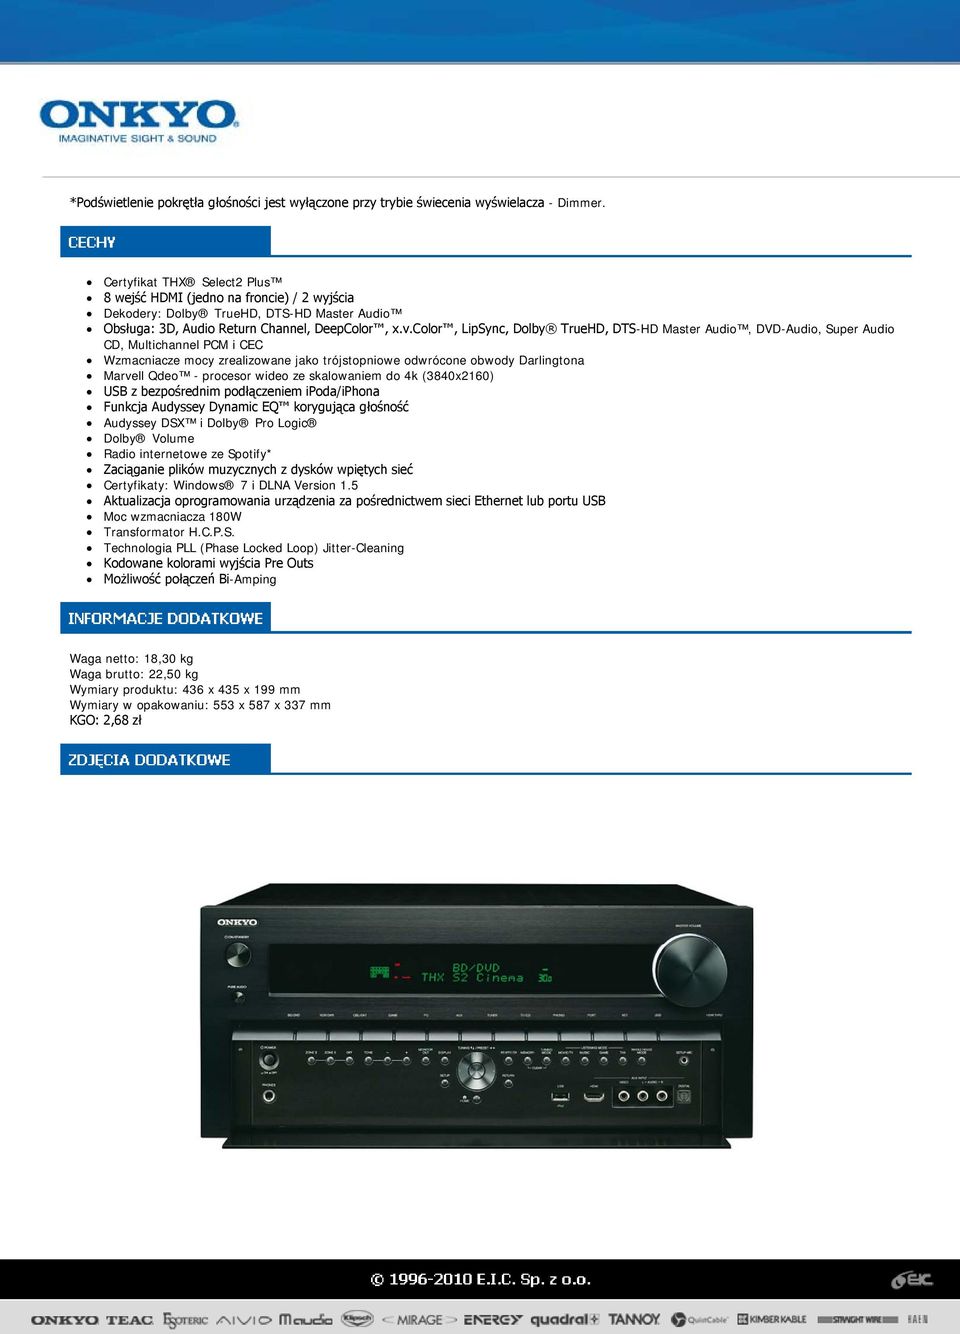 color, LipSync, Dolby TrueHD, DTS-HD Master Audio, DVD-Audio, Super Audio CD, Multichannel PCM i CEC Wzmacniacze mocy zrealizowane jako trójstopniowe odwrócone obwody Darlingtona Marvell Qdeo -